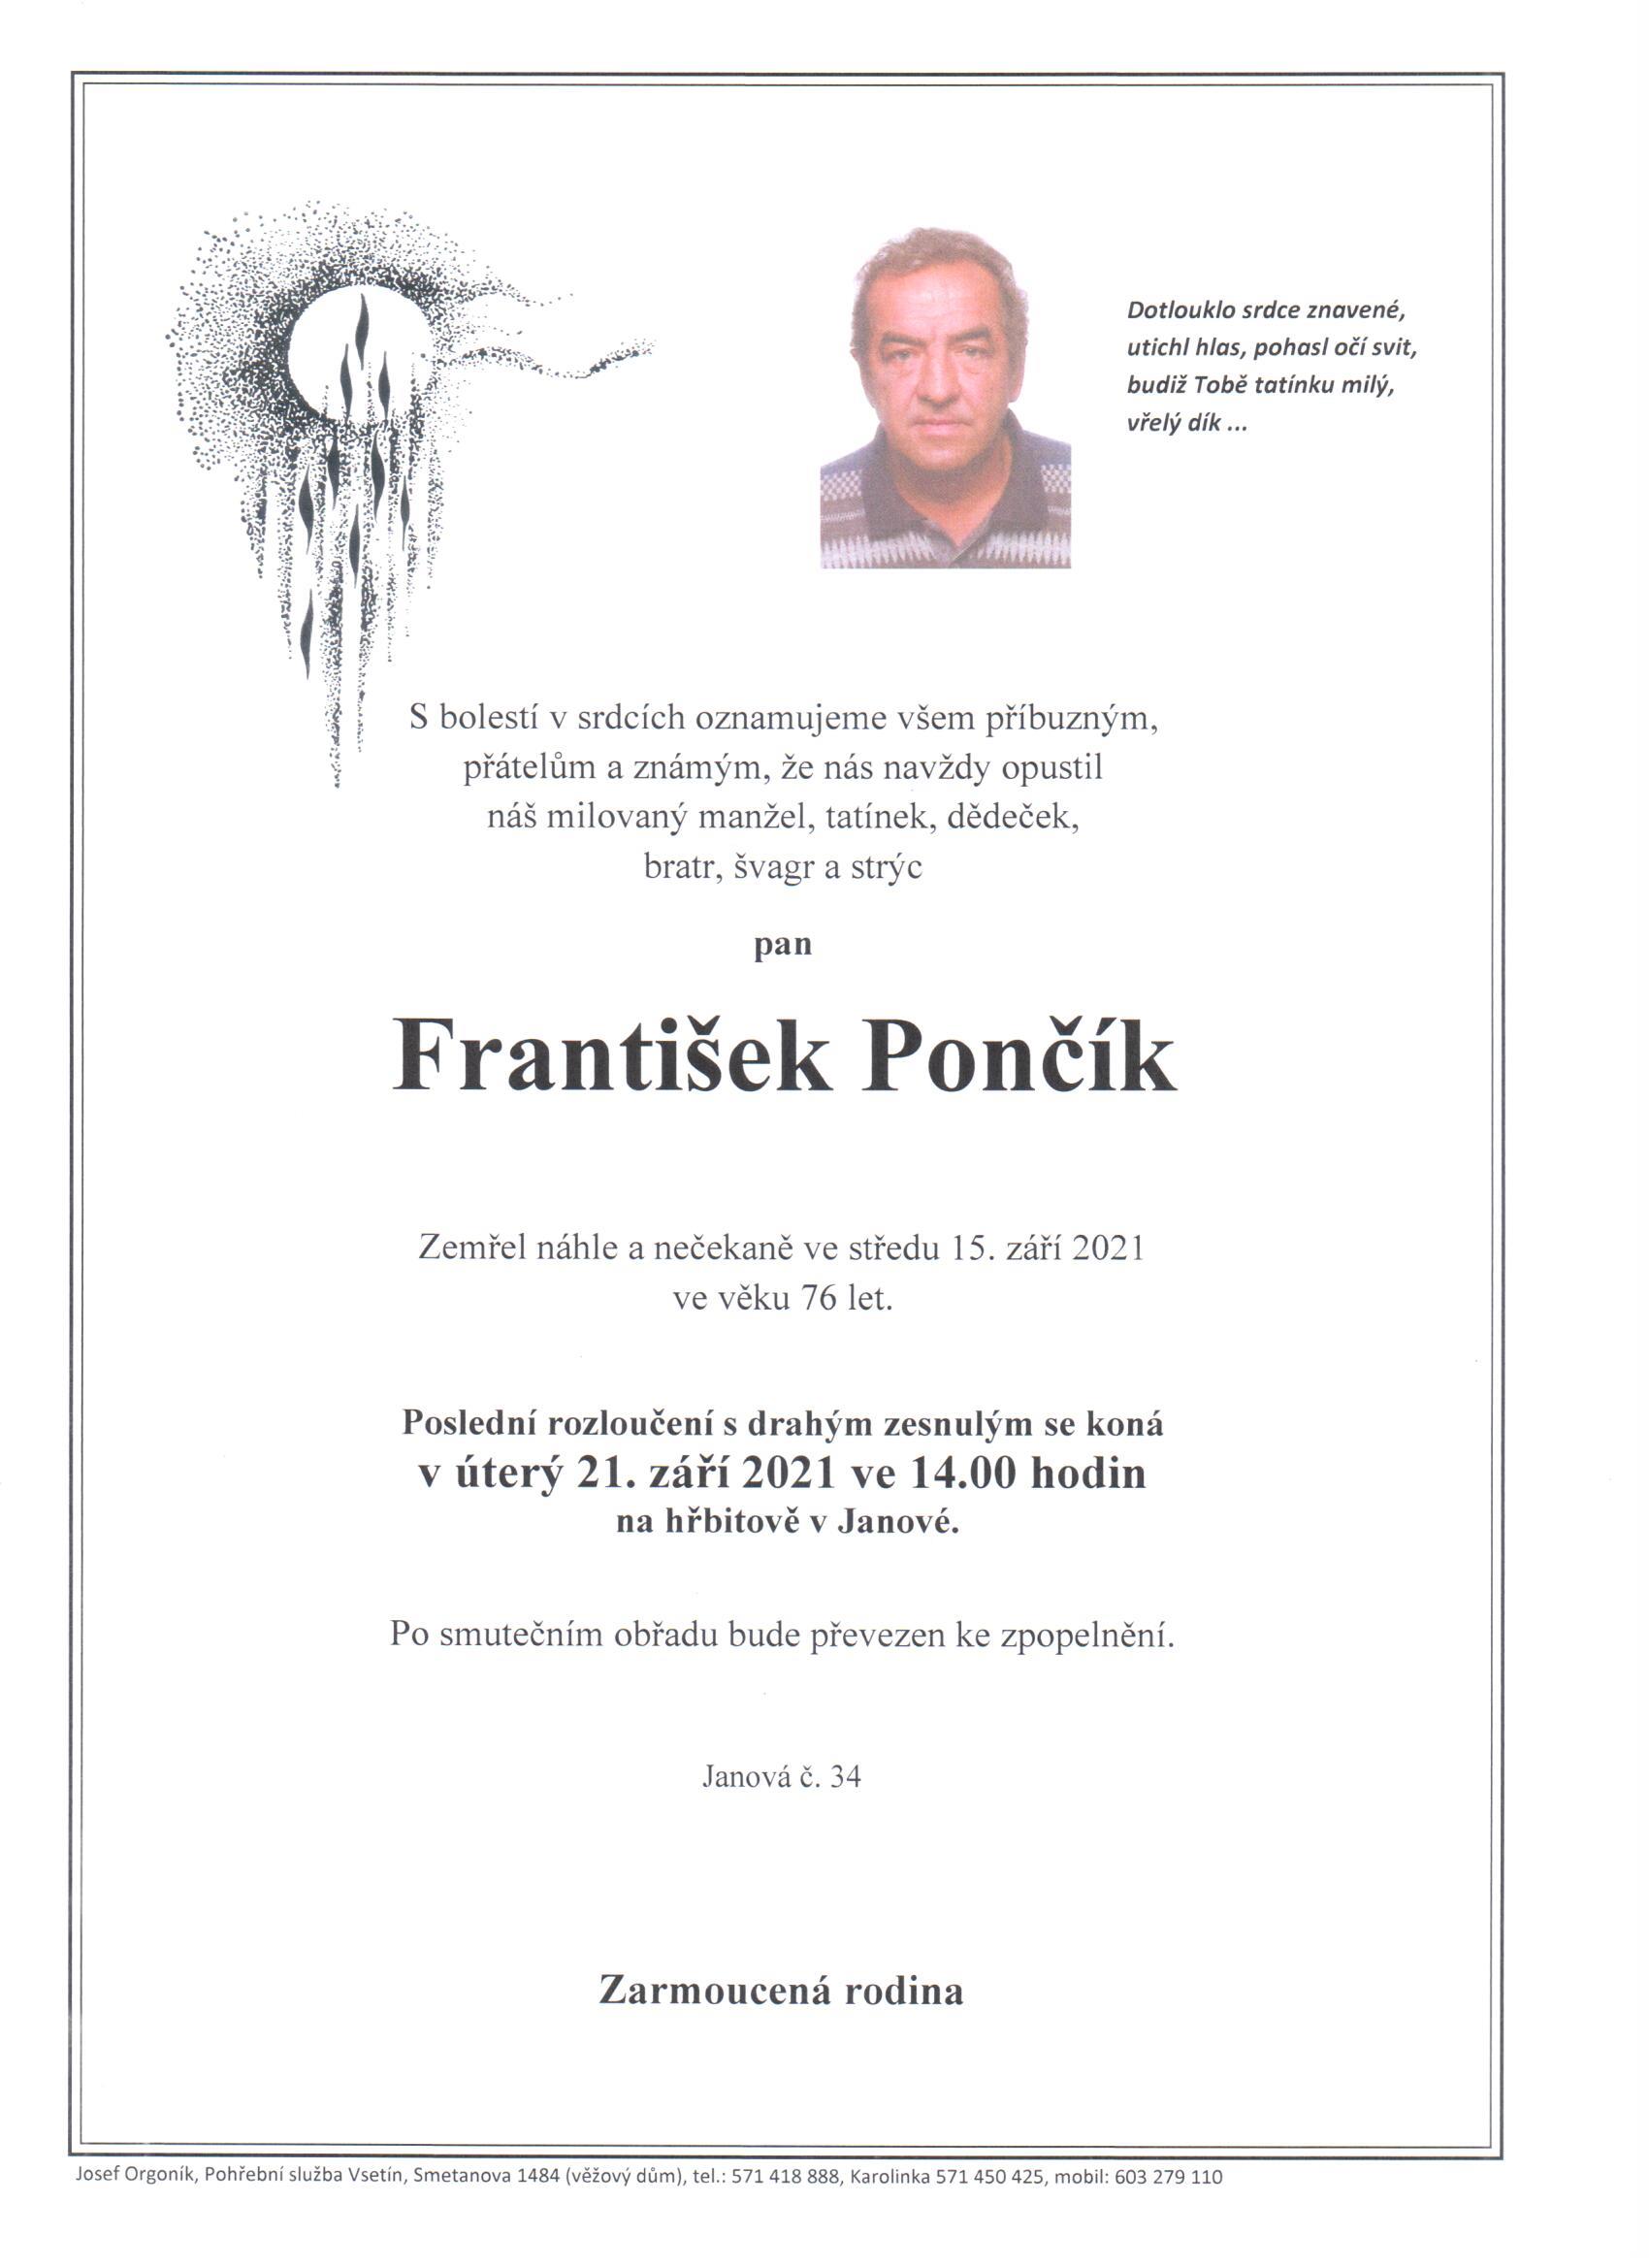 František Pončík